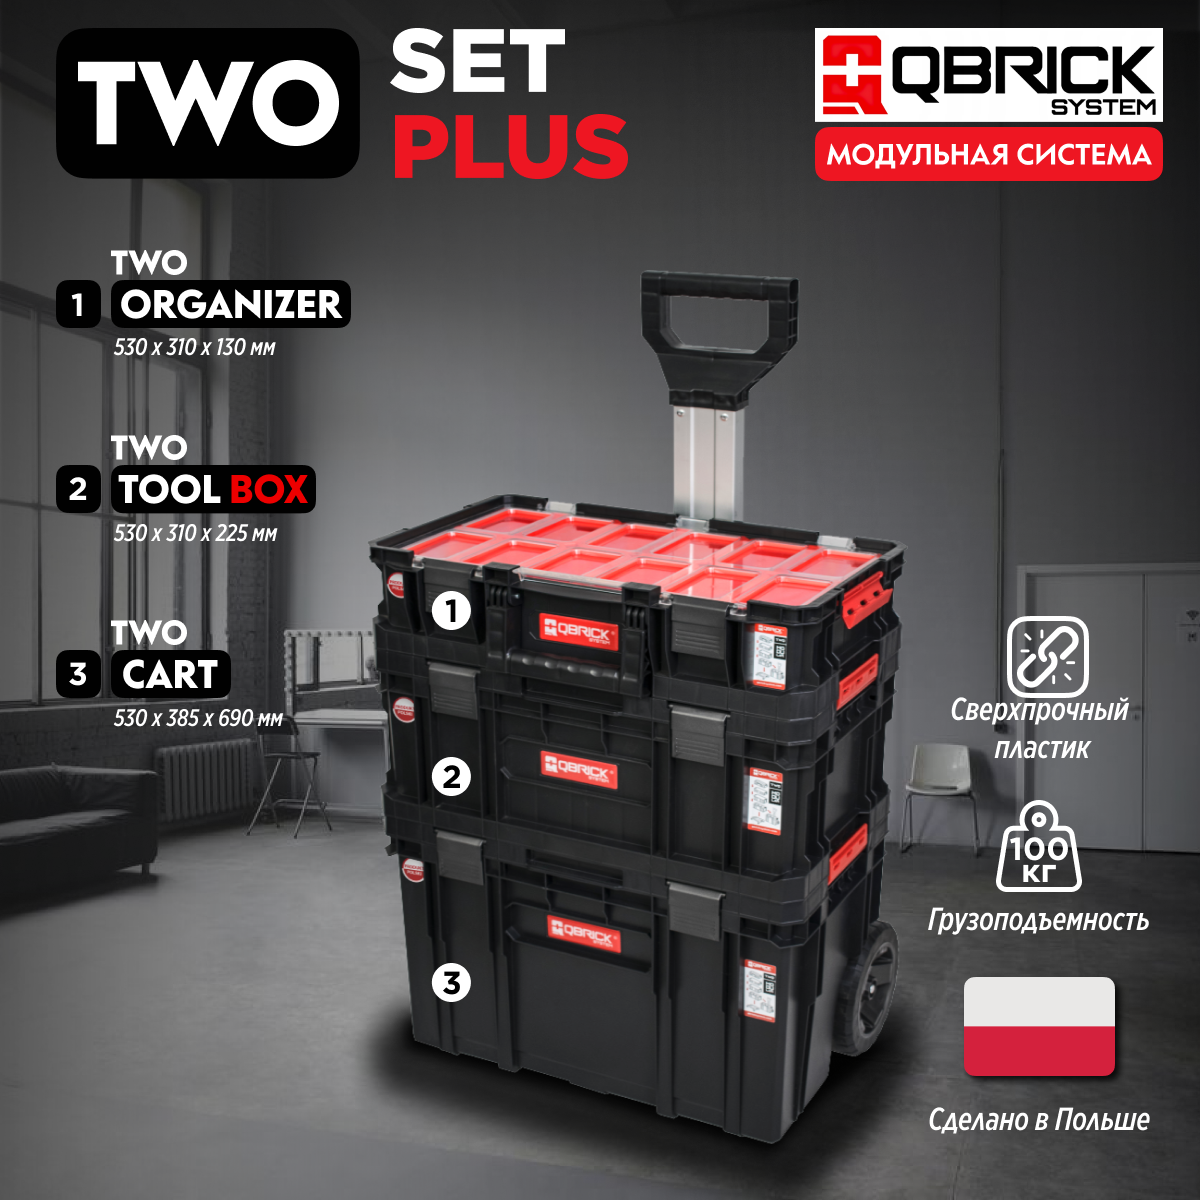 Набор ящиков для инструментов Qbrick System TWO Set Plus 1-Z251248PG001 тележка инструментальная зубр эксперт 38903 7 7 ящиков 730x475x910мм